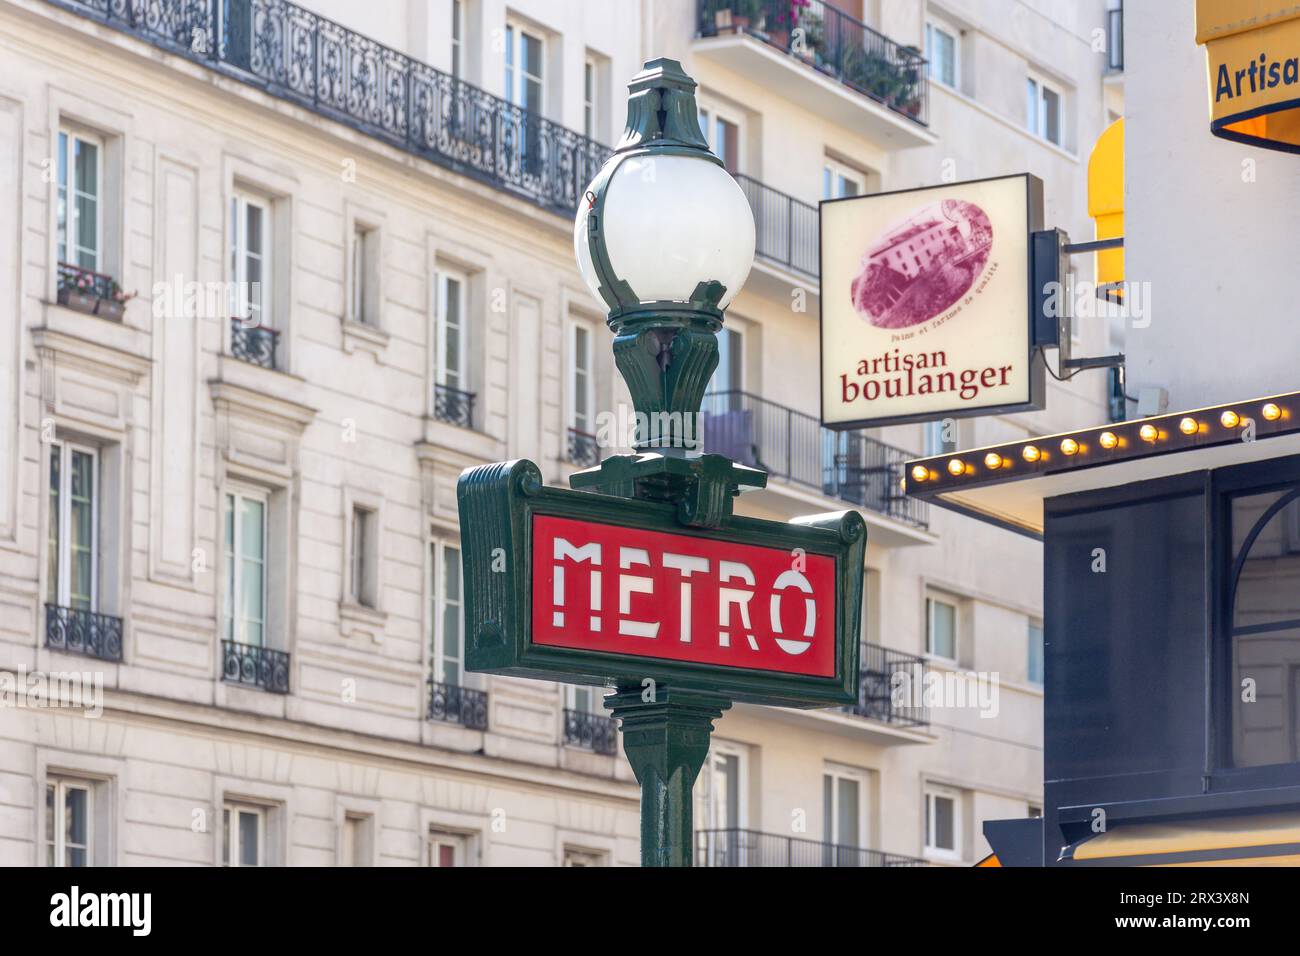 Porte de la Chapelle Metro Station sign, Quartier de La Chapell, Paris, Île-de-France, France Stock Photo